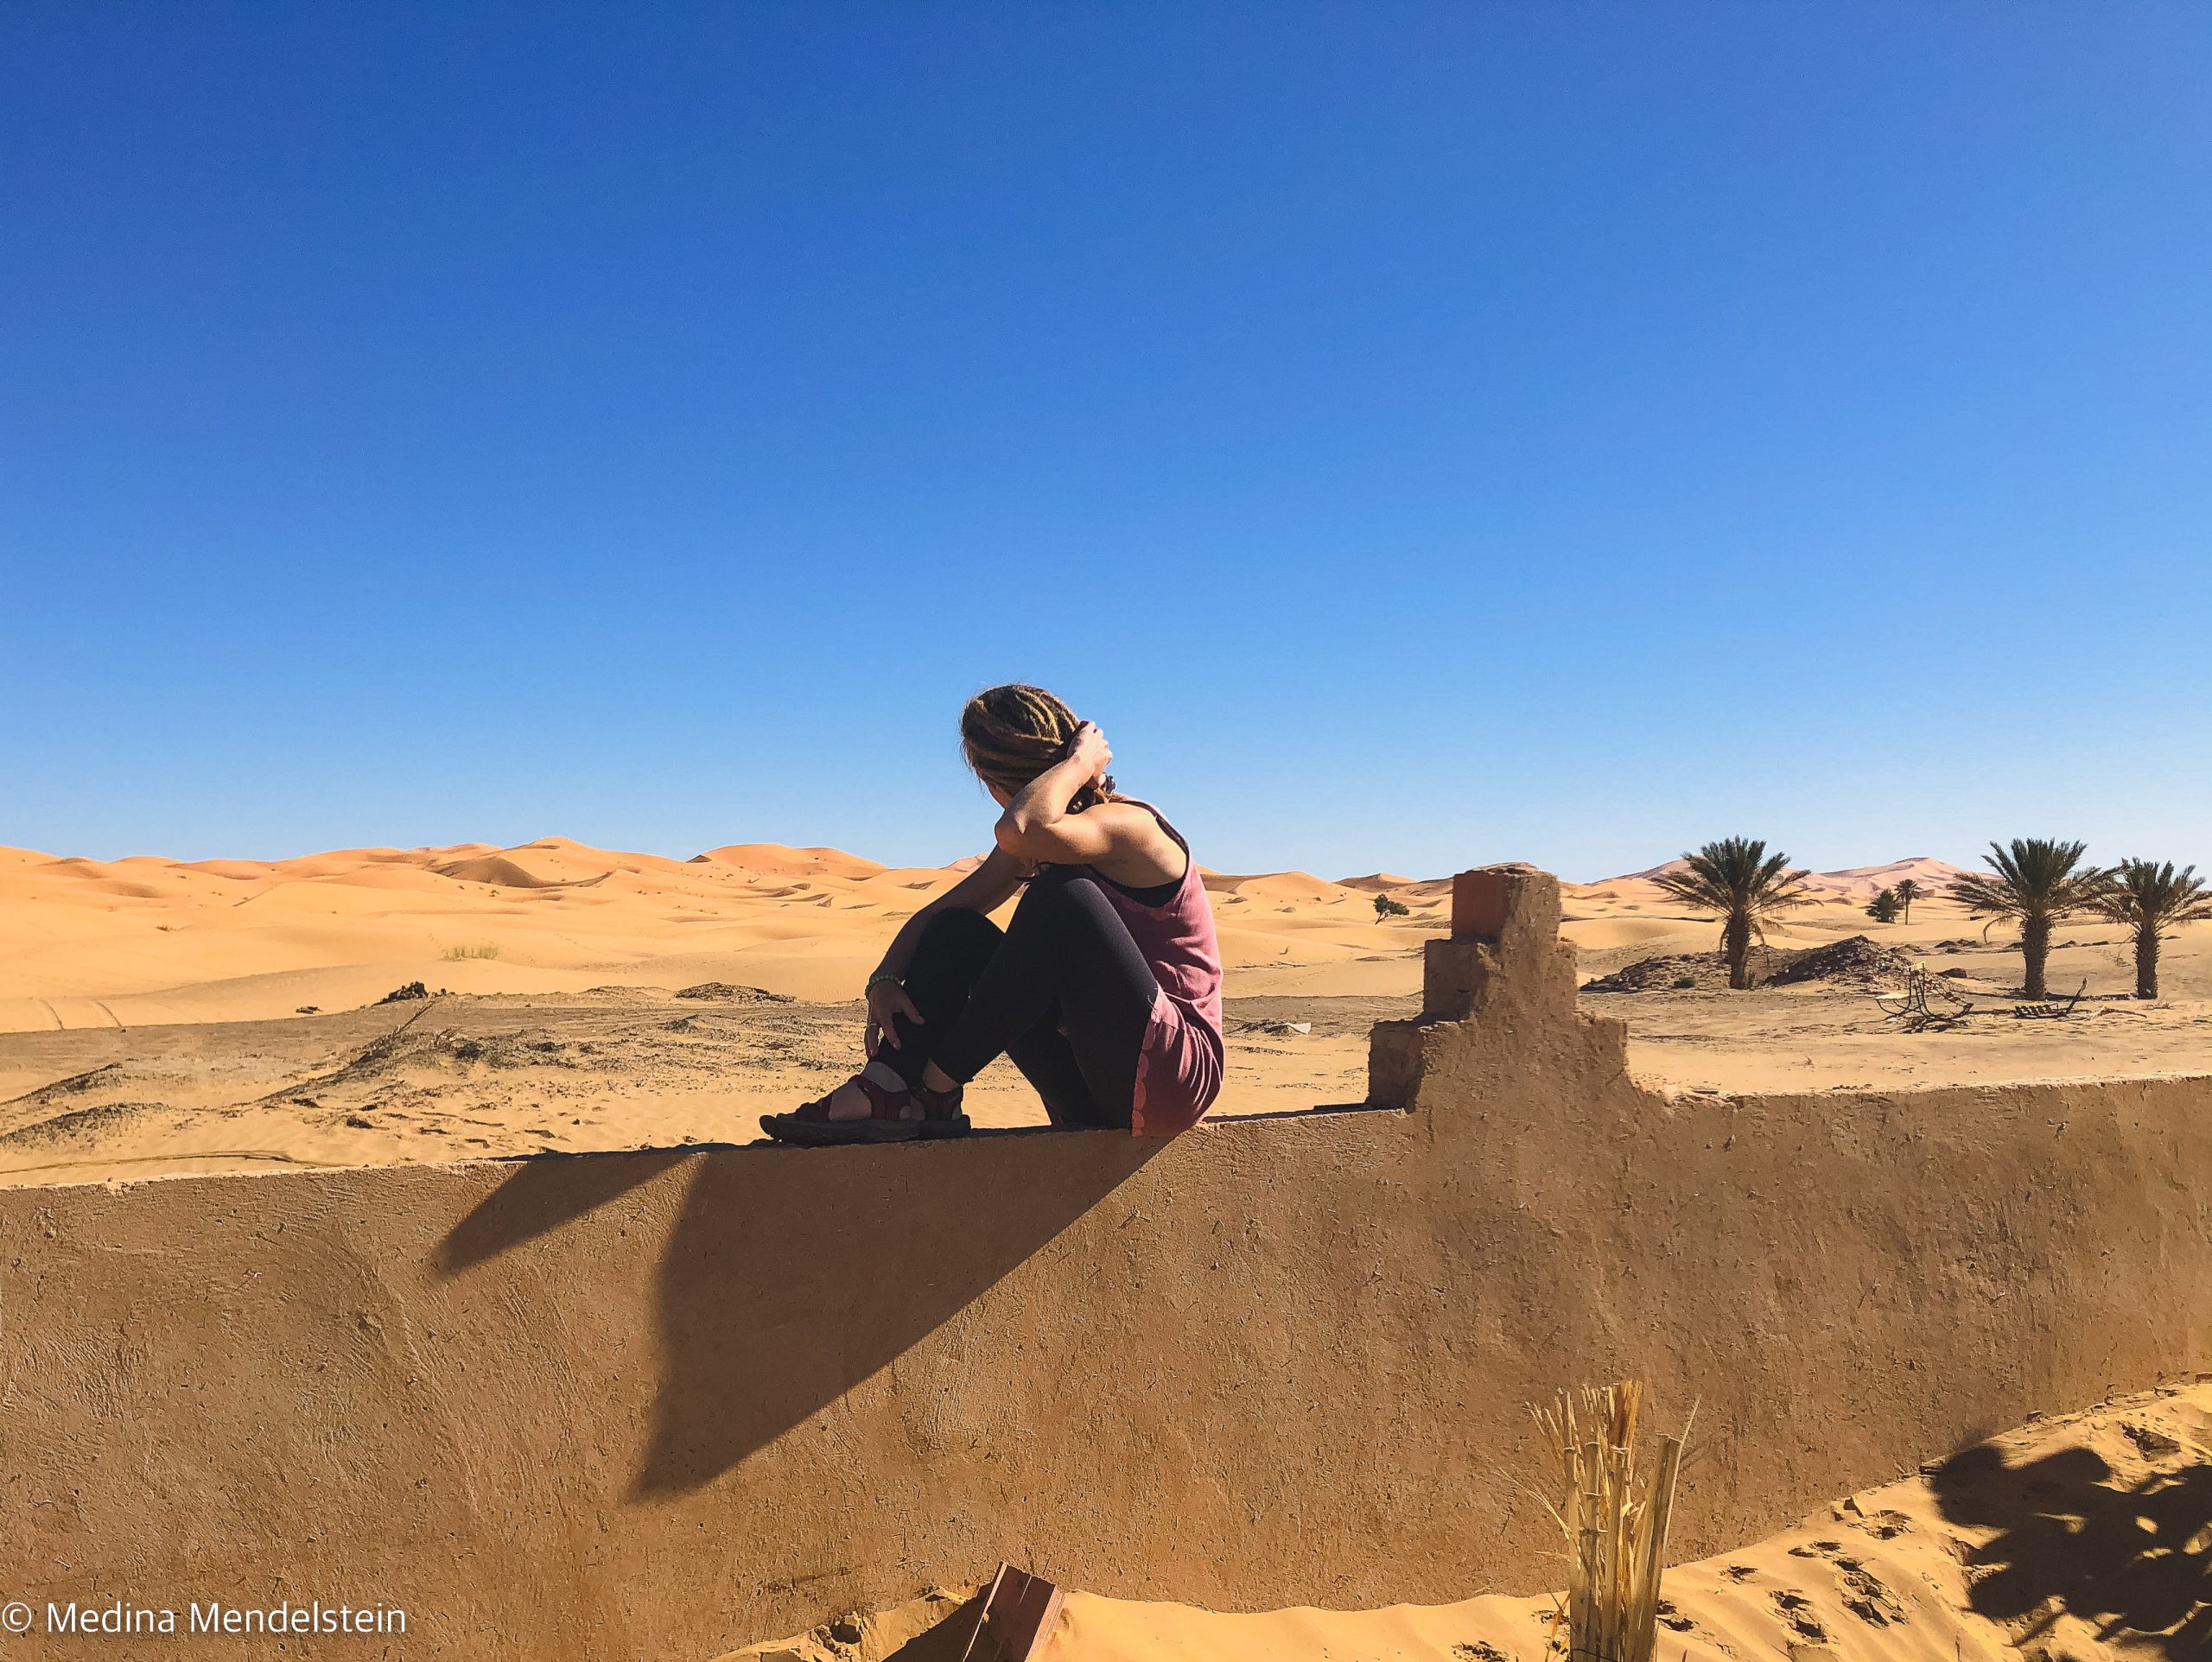 Fotografie aus: Merzouga in Marokko, Afrika. Im Hintergrund ist Marokkos Wüstendüne. Im Vordergrund ist eine Mauer, auf dieser sitzt Medina Mendelstein, Content Creator.